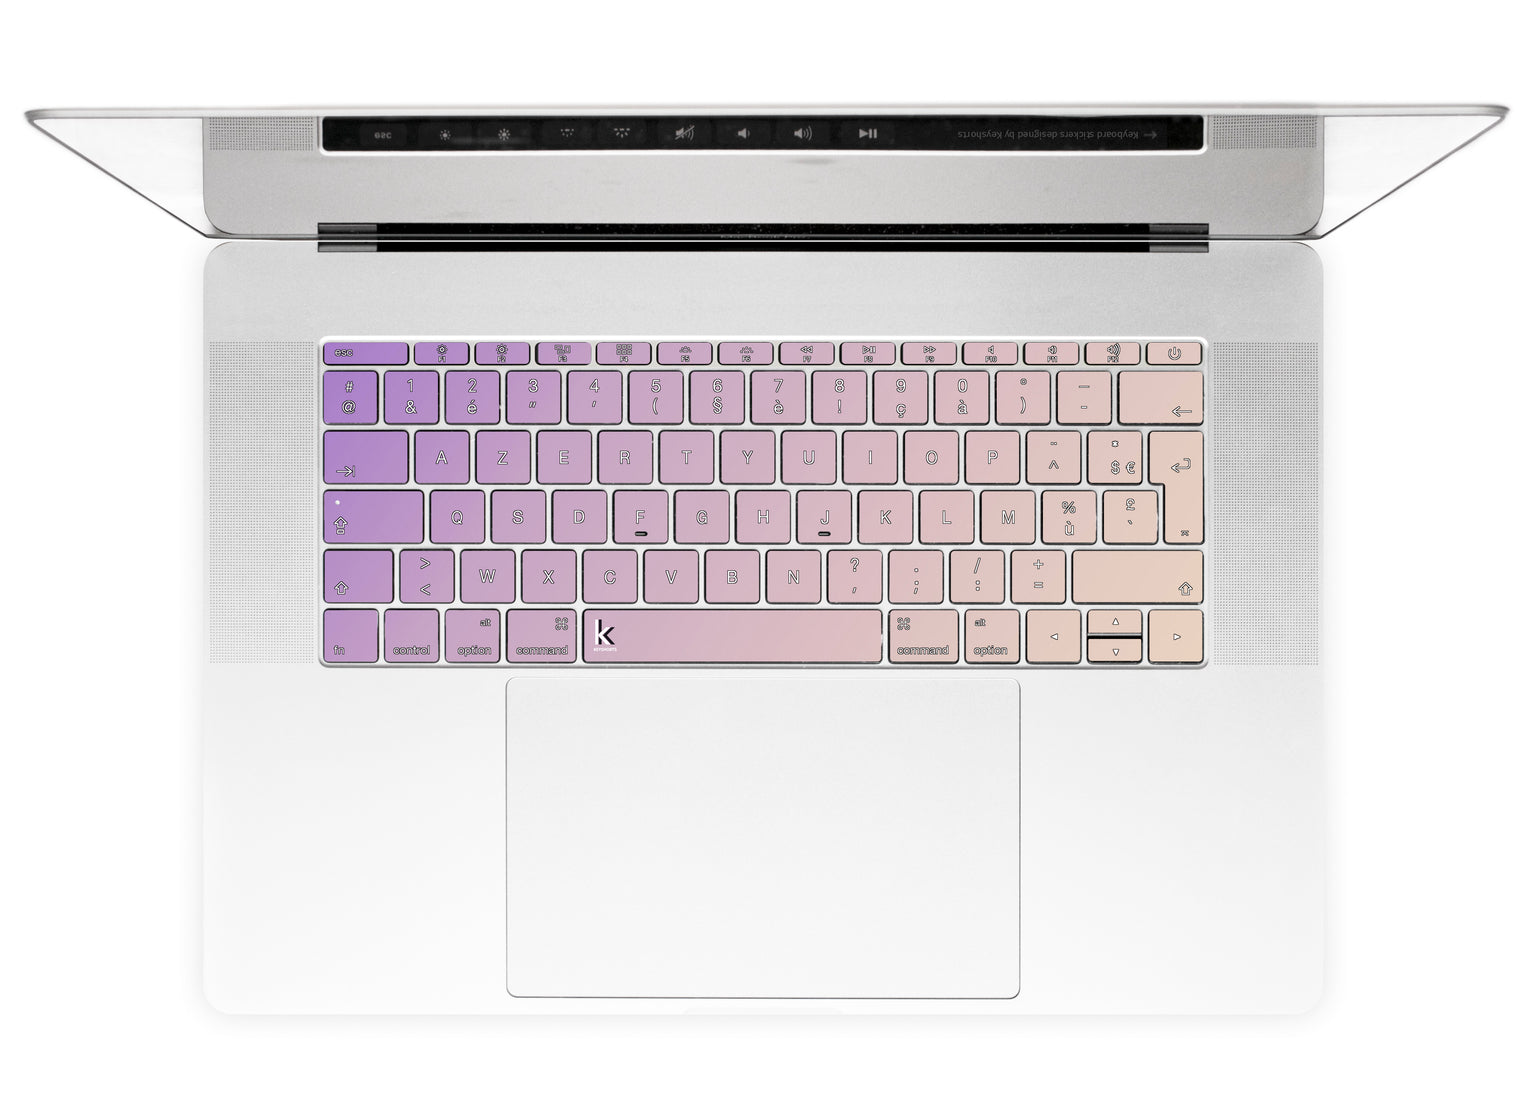 Purple Beige Ombre MacBook Keyboard Stickers alternate FR